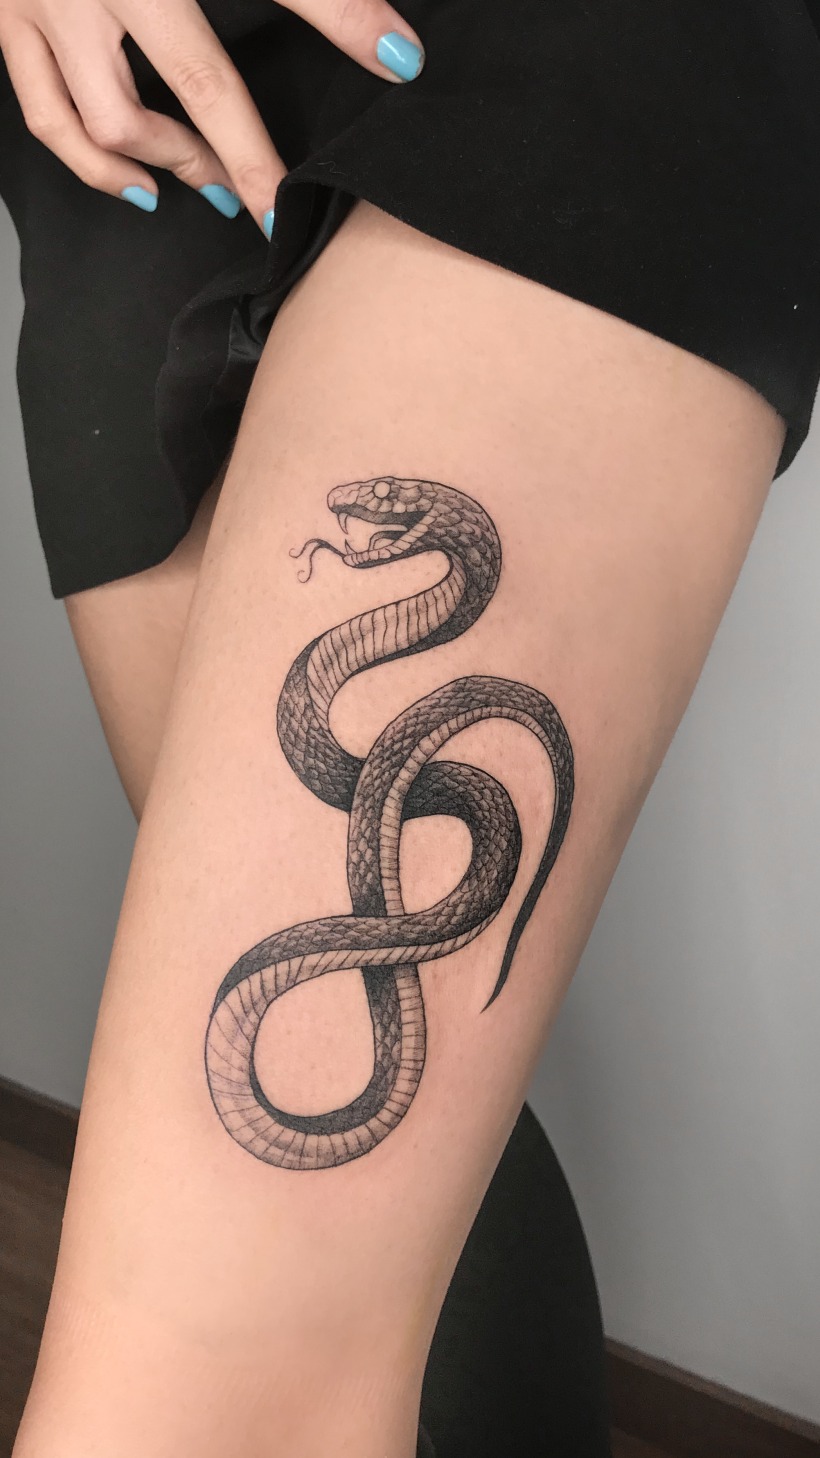 Tatuajes de dragones y serpientes | Domestika